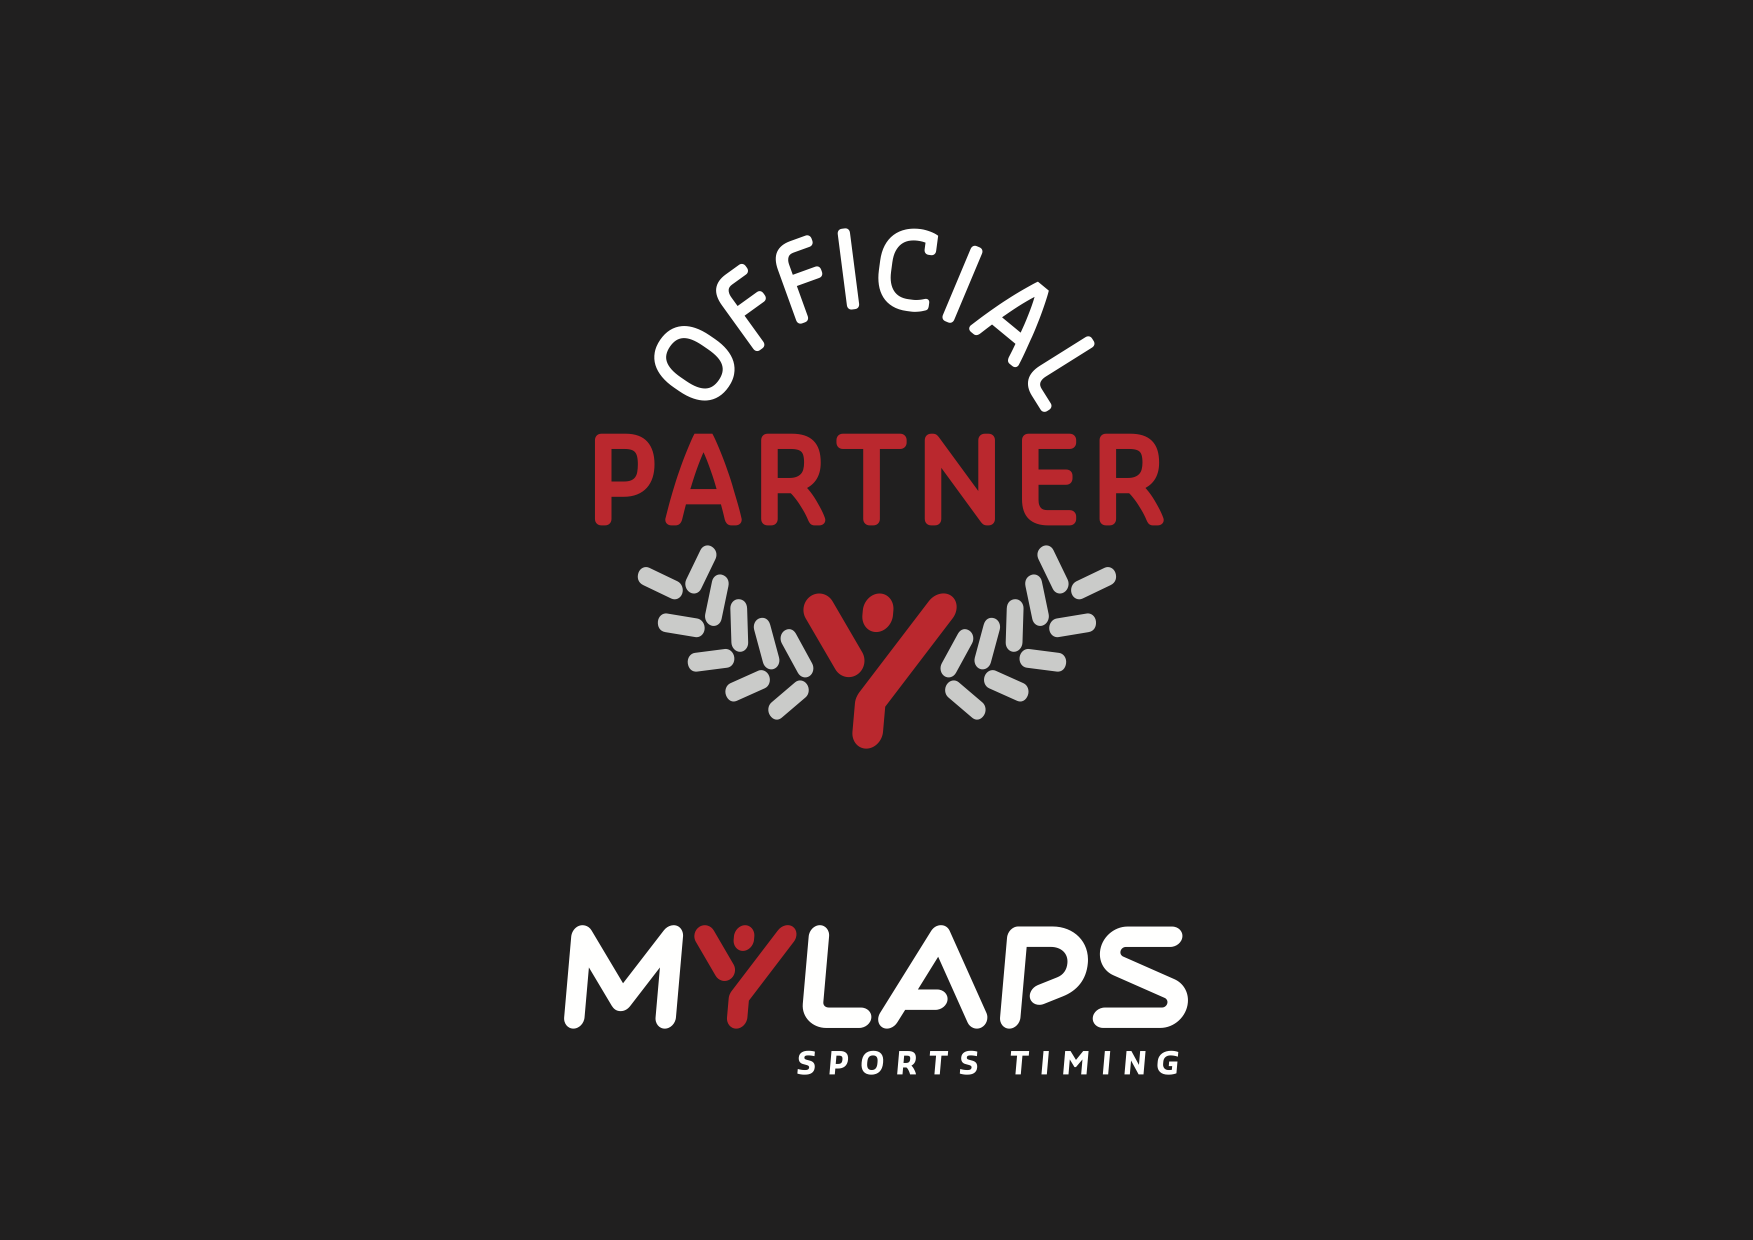 MYLAPS_Sports_Timing_Partner_logo_Black_PDF_LR.png